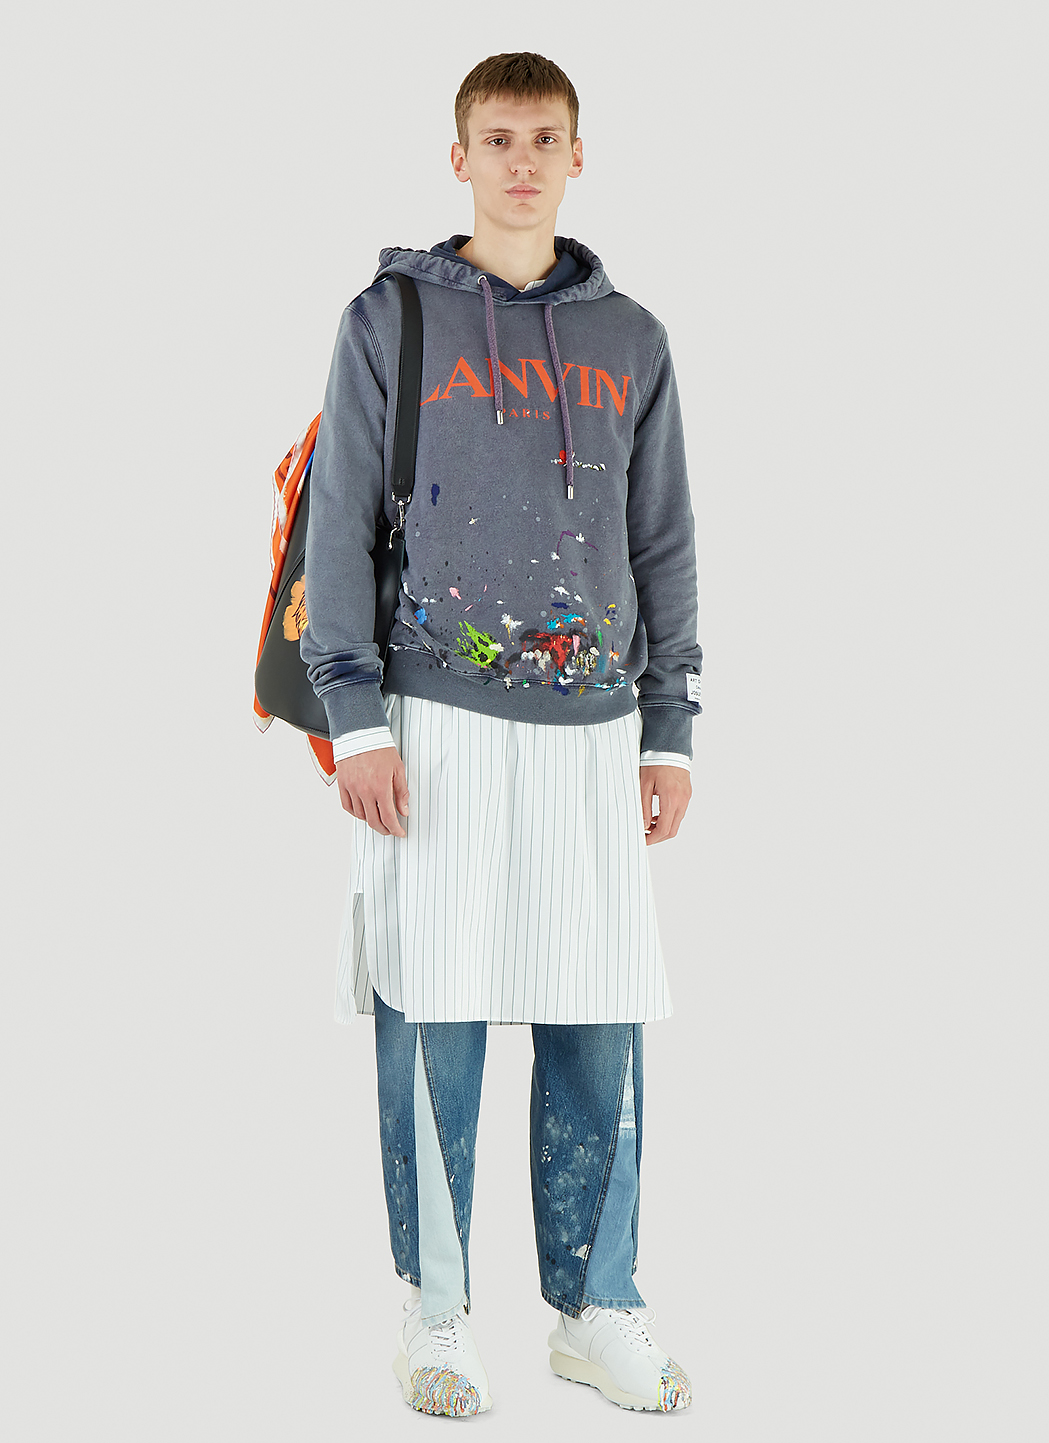 Lanvin X Gallery Dept. Men's Splatter Hooded Sweatshirt in Blue | LN-CC